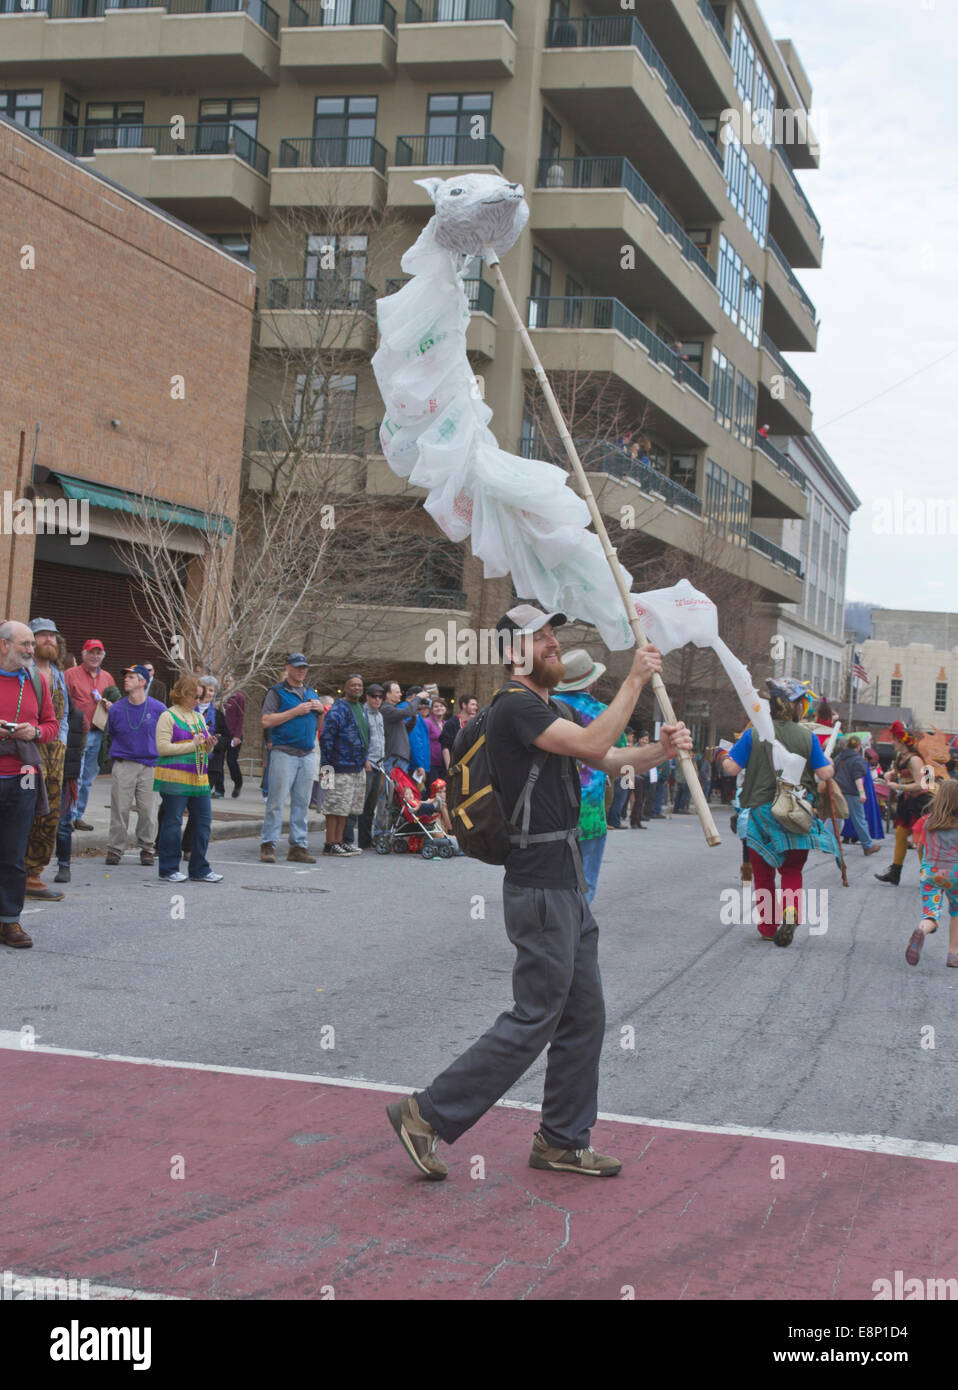 Un uomo in marcia in un Mardi Gras Parade onde un artistico, fluente testa di lupo marionetta creati al di fuori di sacchetti di plastica usa e getta Foto Stock